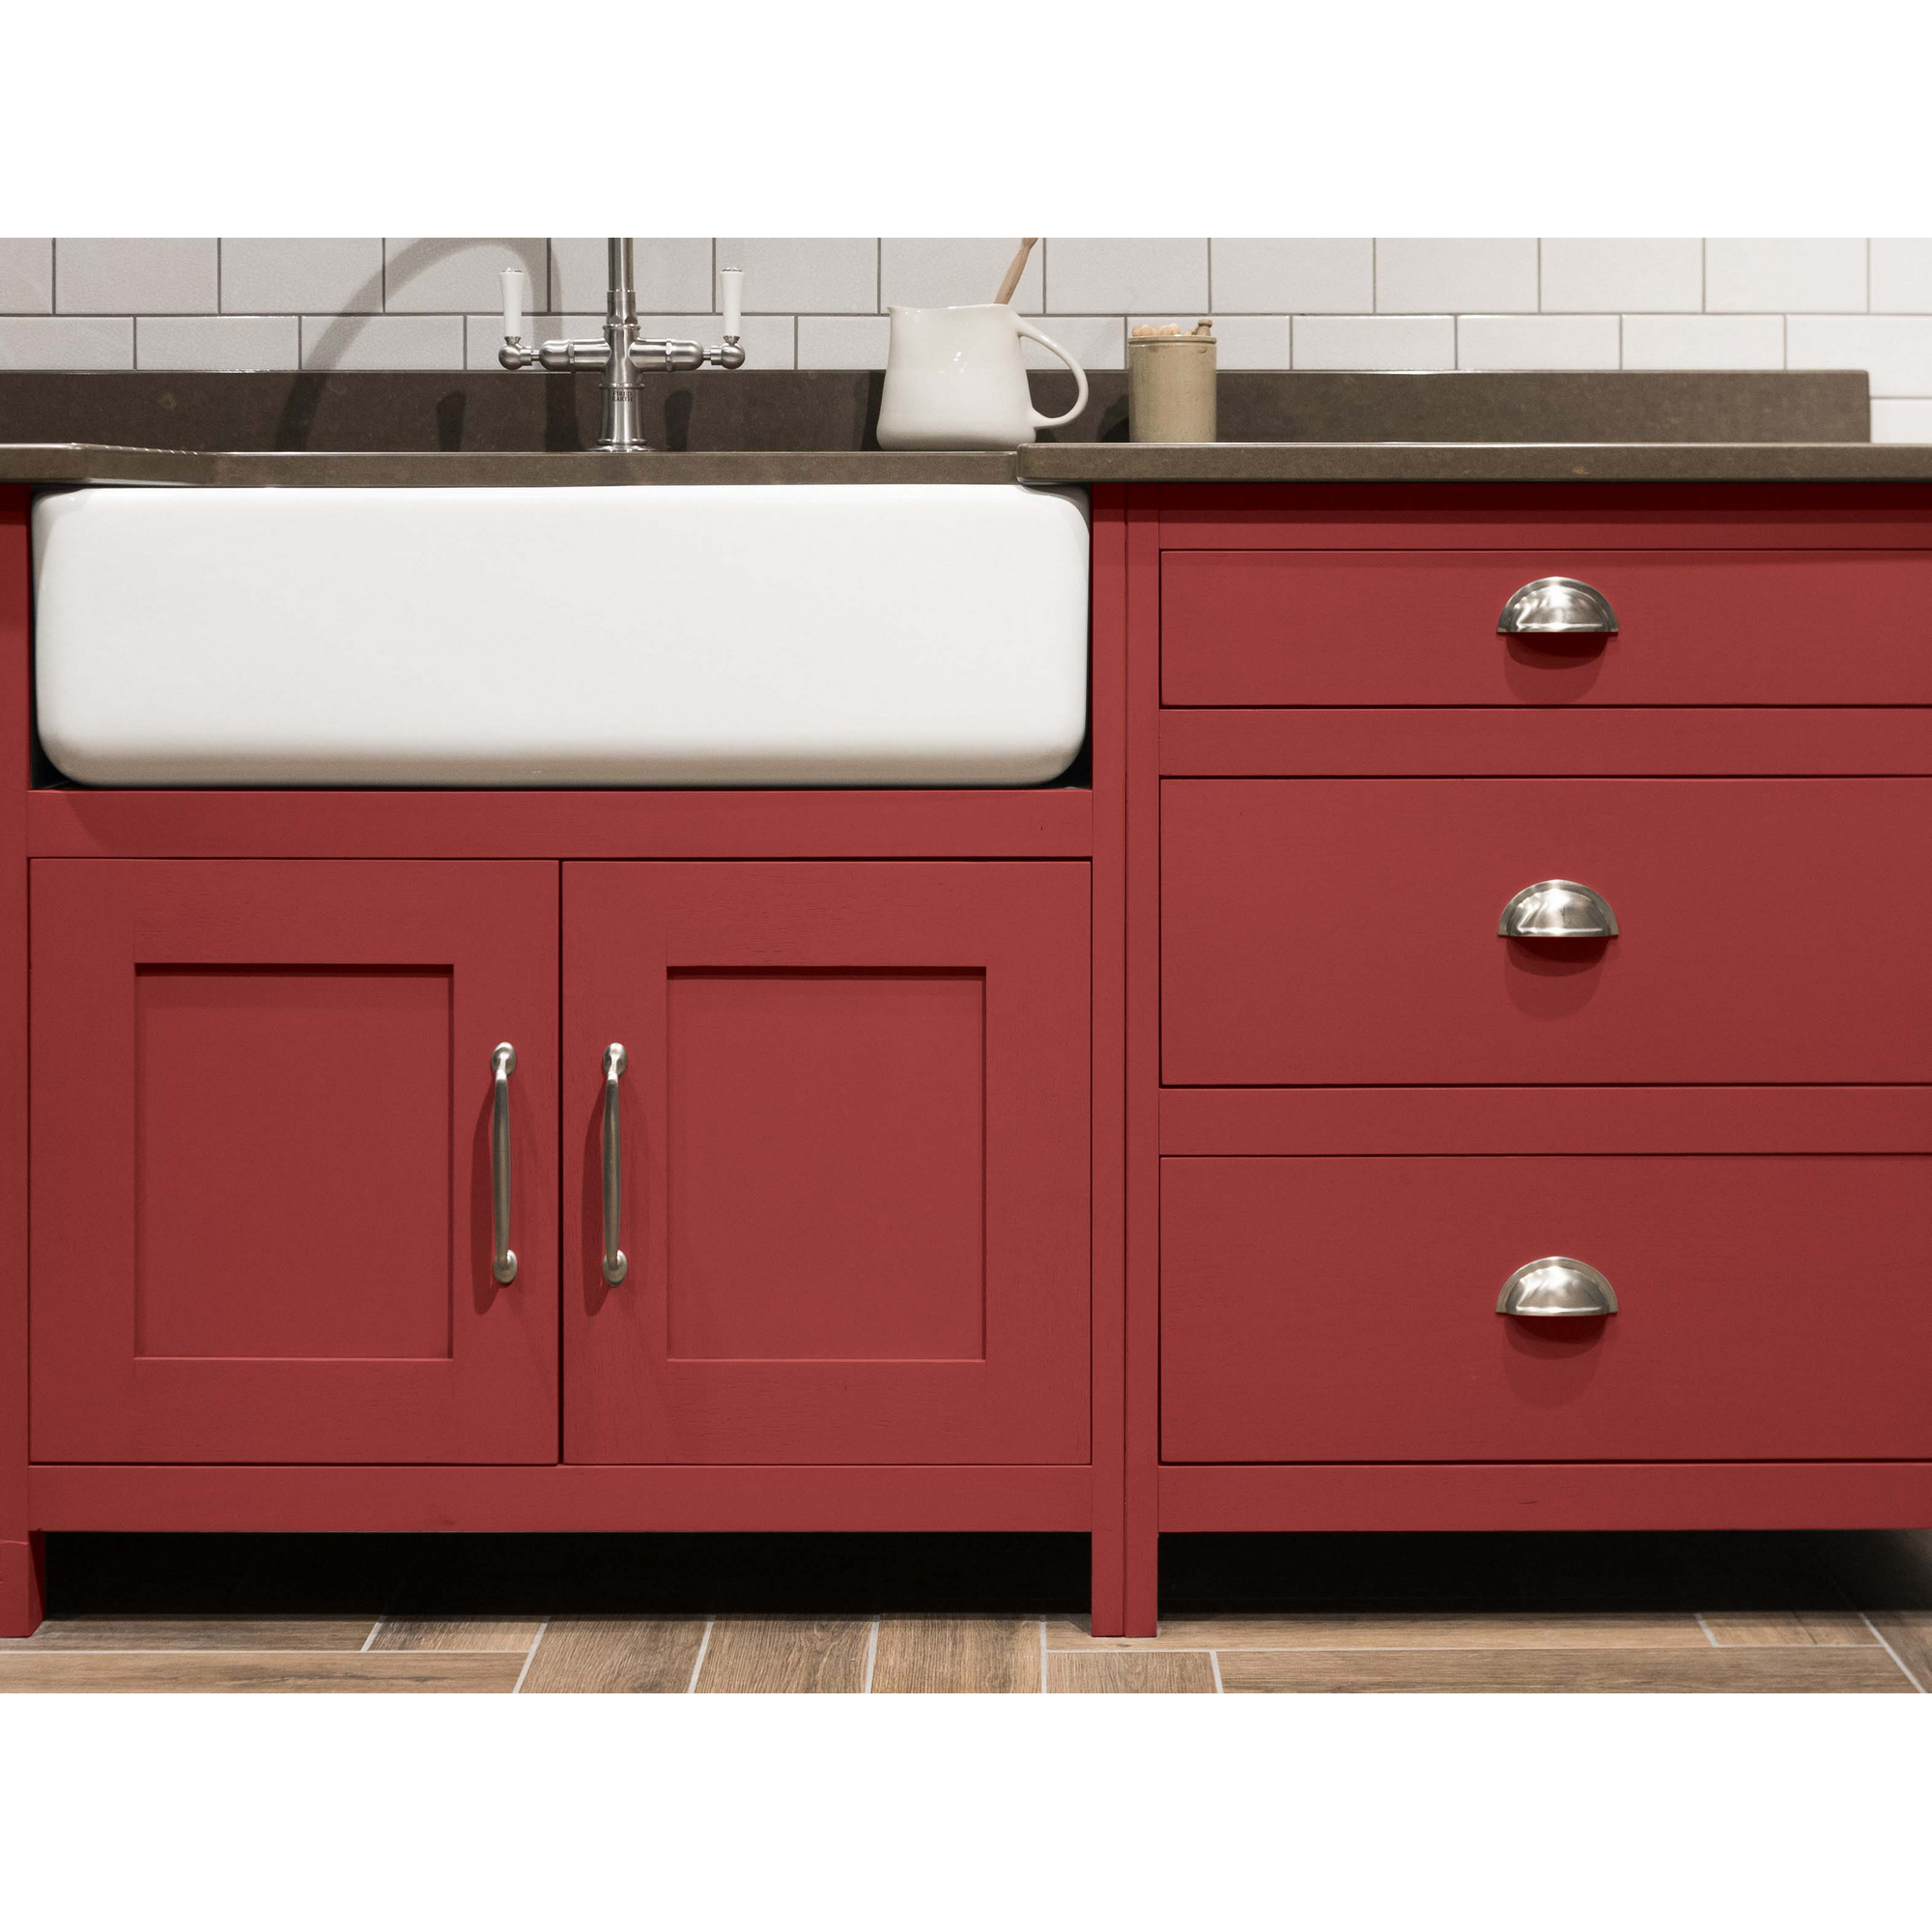 Renovierfarbe für Möbel- und Küchenfronten antikrot seidenmatt 2,5 l + product picture